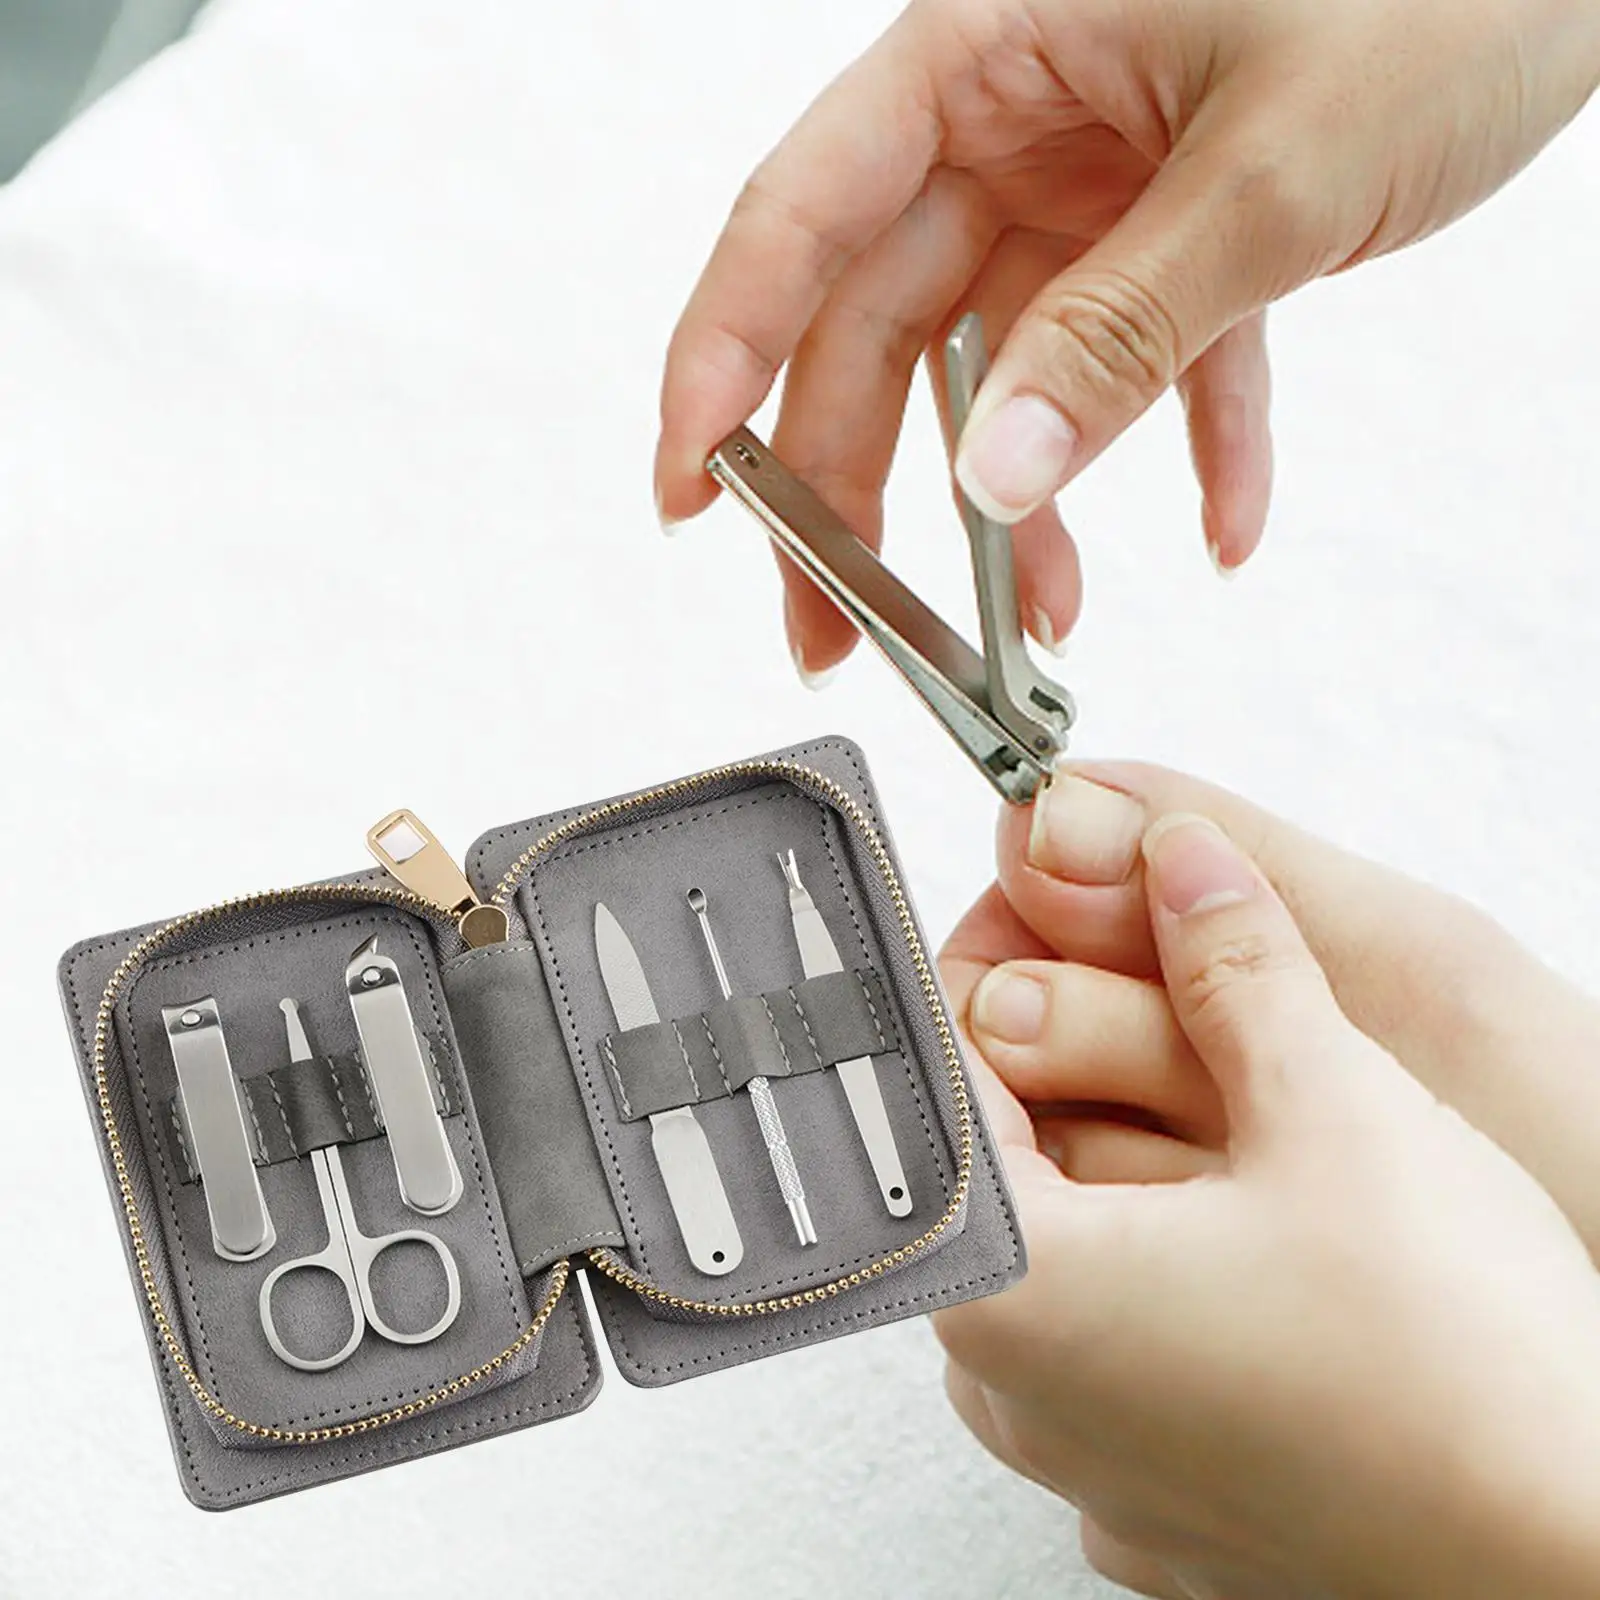 6 Pieces Portable Manicure Set with PU Leather Case Fingernails Toenails for Travel